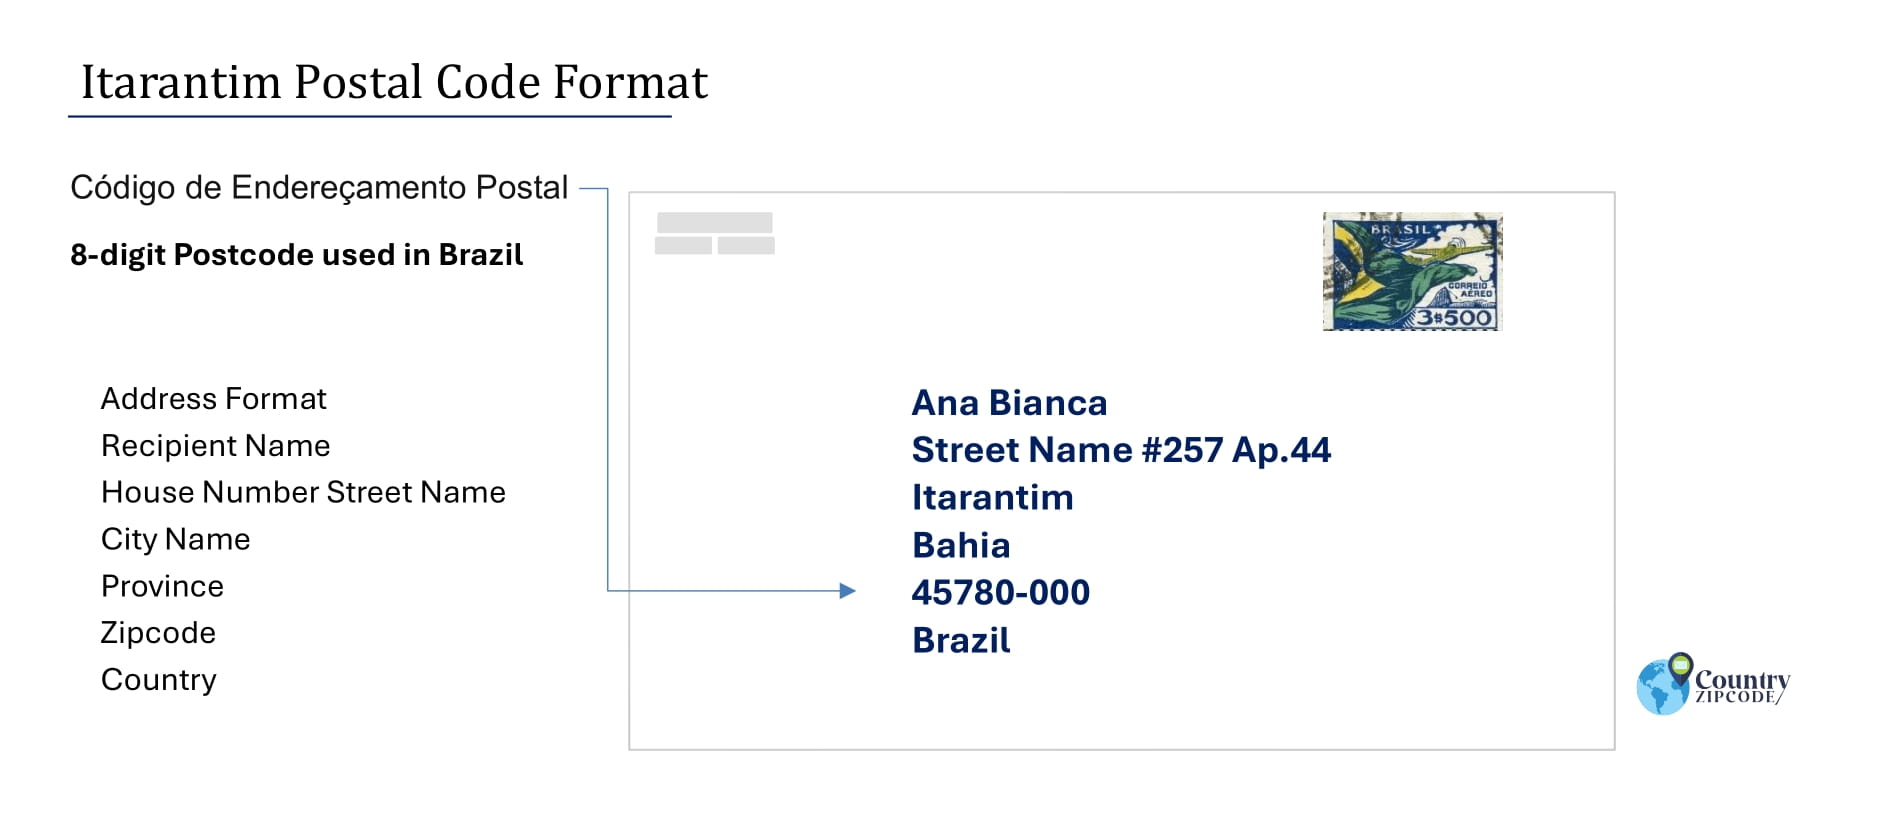 Example of Codigo de Enderecamento Postal and Address format of Itarantim Brazil